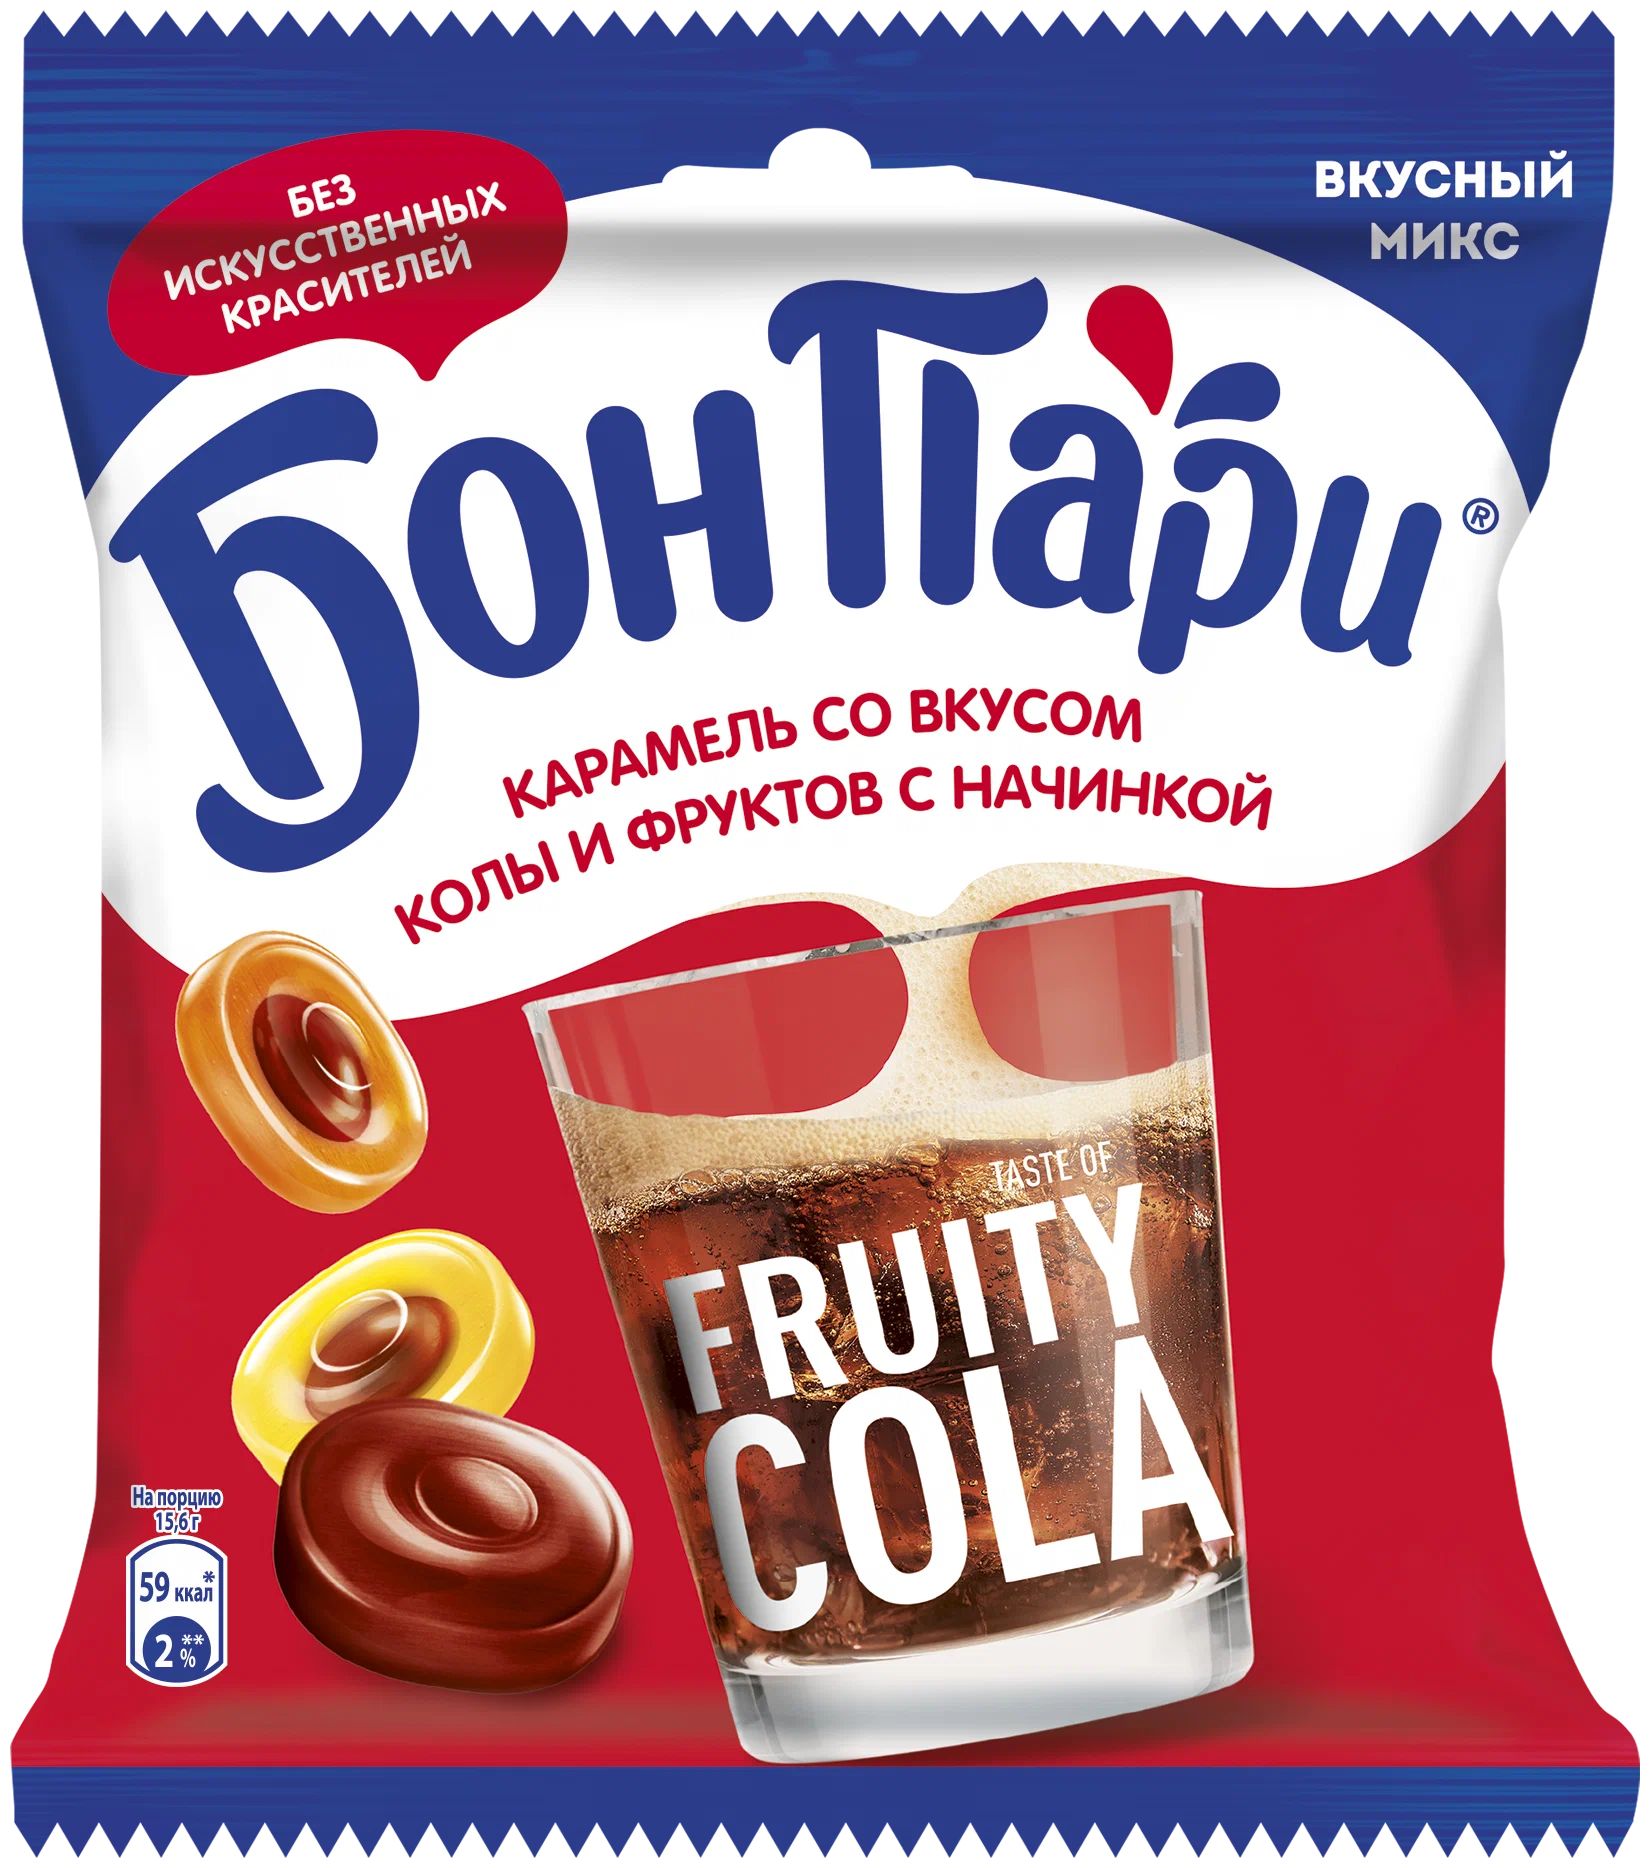 Карамель Бон Пари Taste of Fruity Cola со вкусом колы-фруктов 200 г